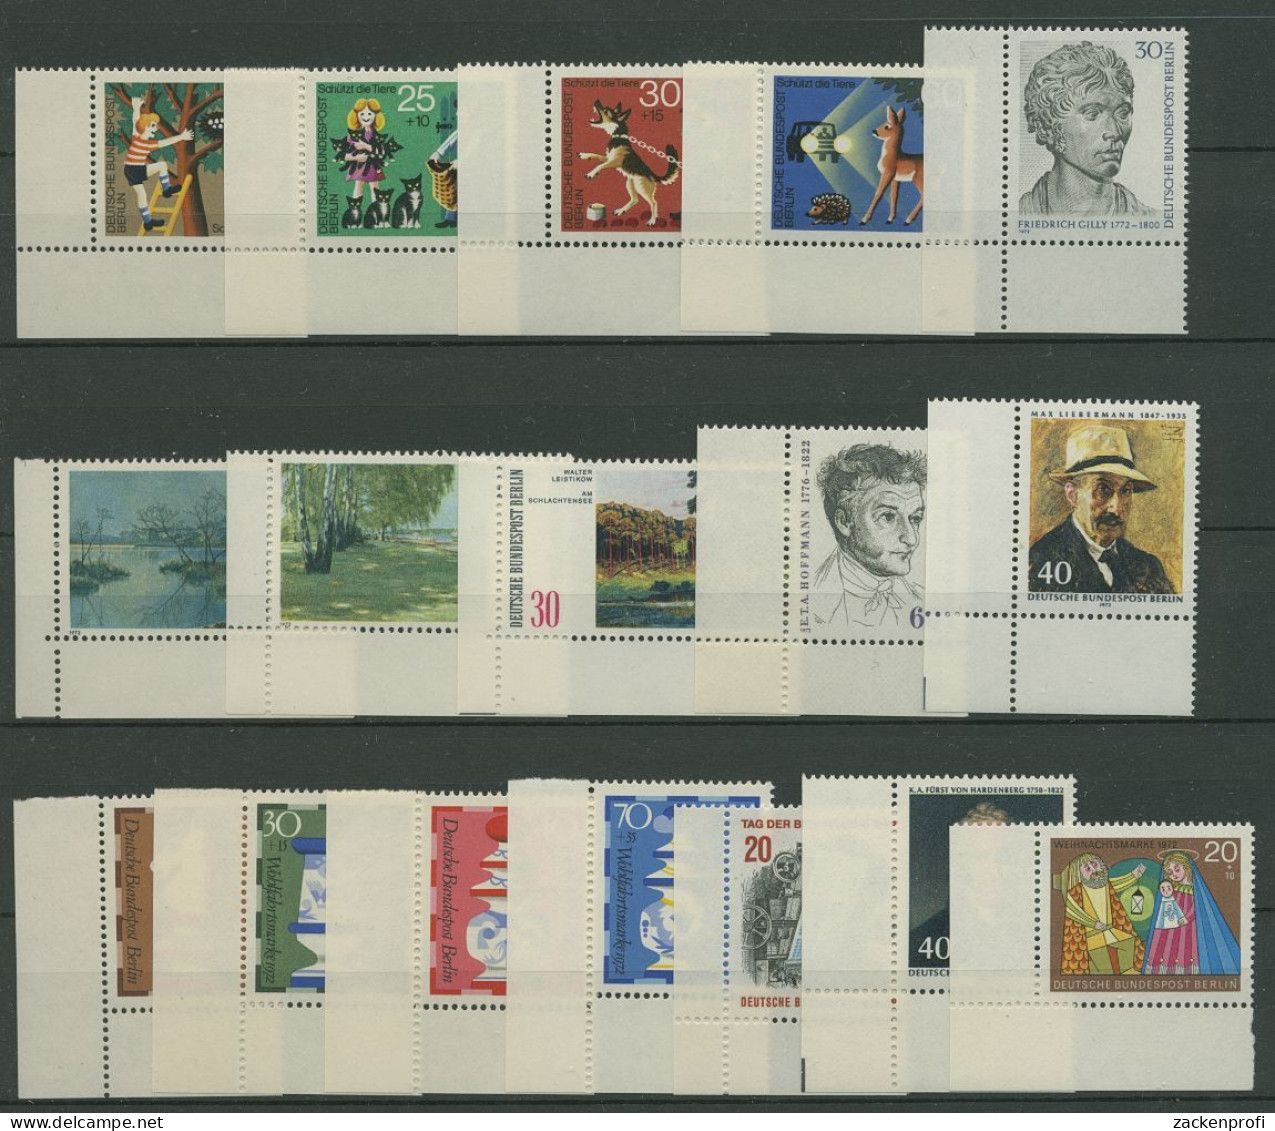 Berlin 1972 Sondermarken Komplett Aus 418/41 Ecke 3 Postfrisch (SG19655) - Unused Stamps